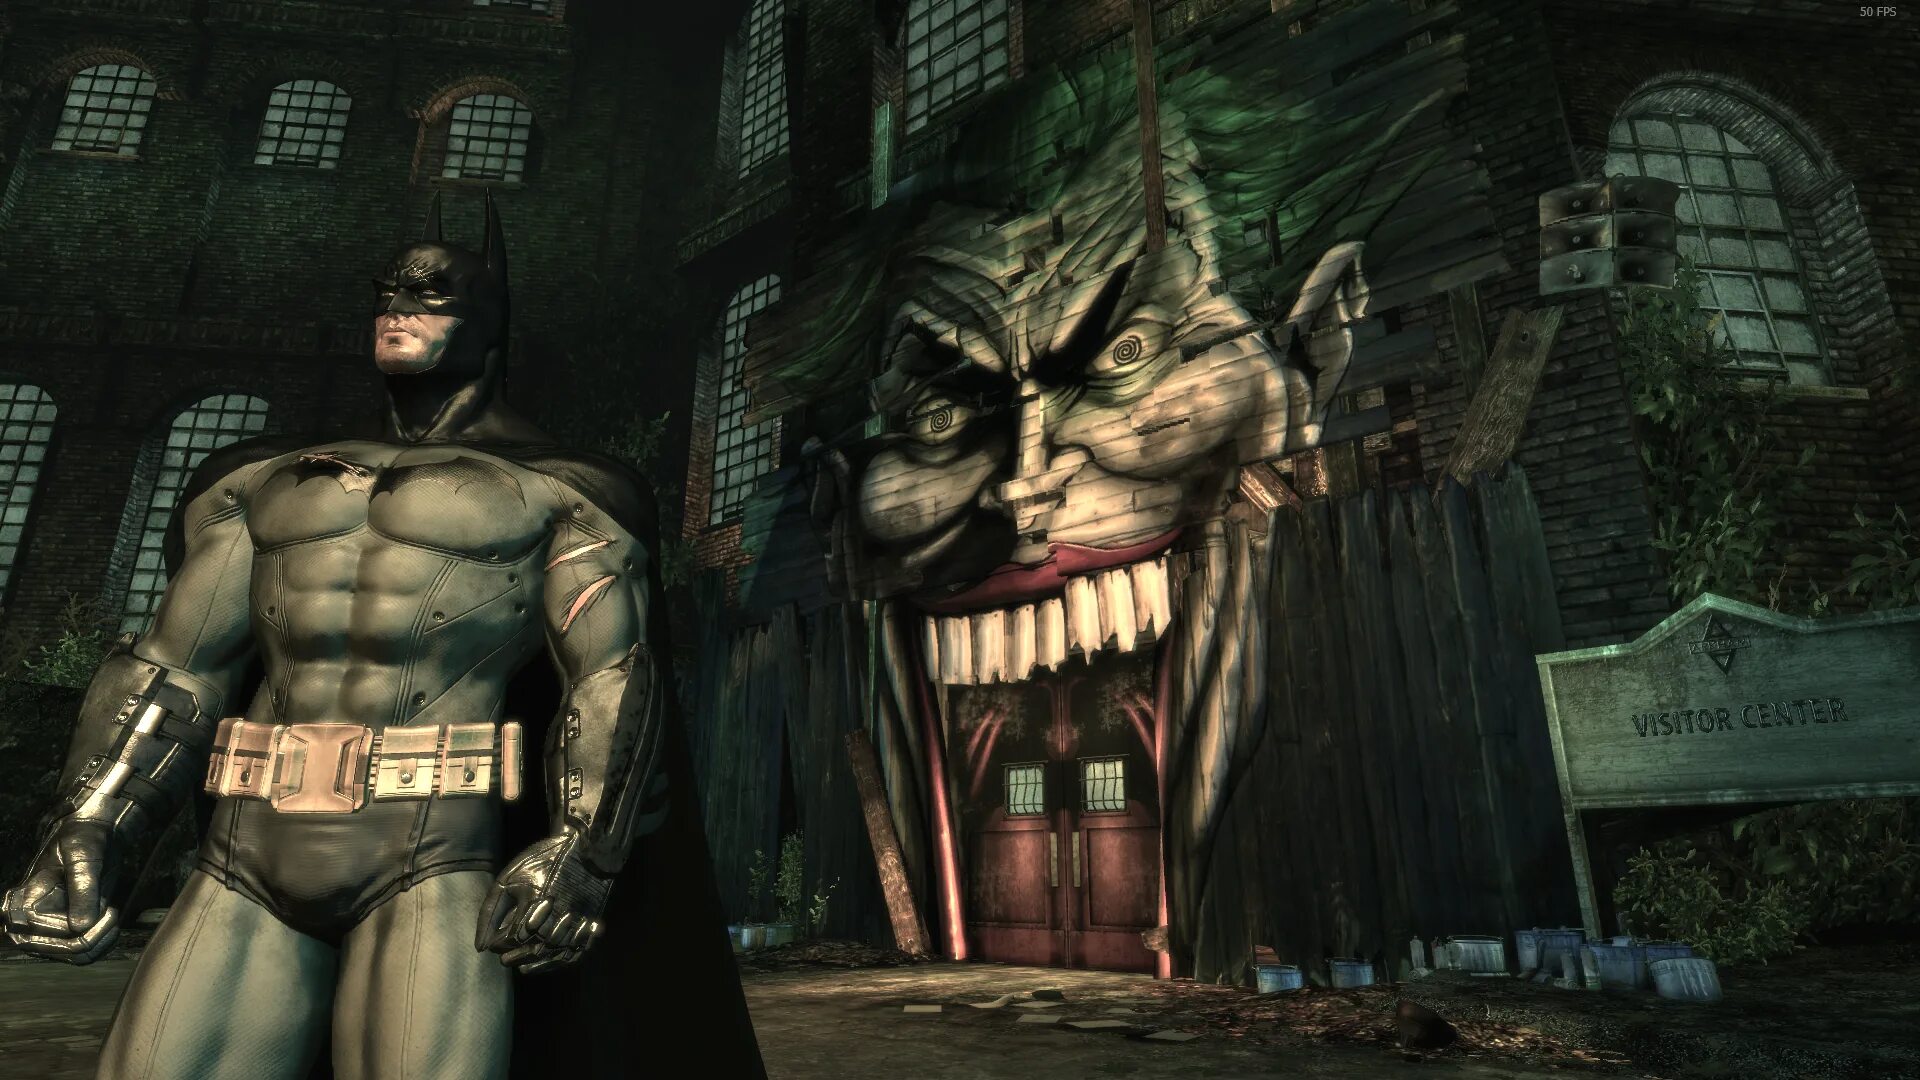 Бэтмен аркхам асайлум. Бэтмен Аркхем асилум. 1.1.1 Batman: Arkham Asylum. Бэтмен Аркхем асилум Бэтмен. Аркхем асилум русификатор